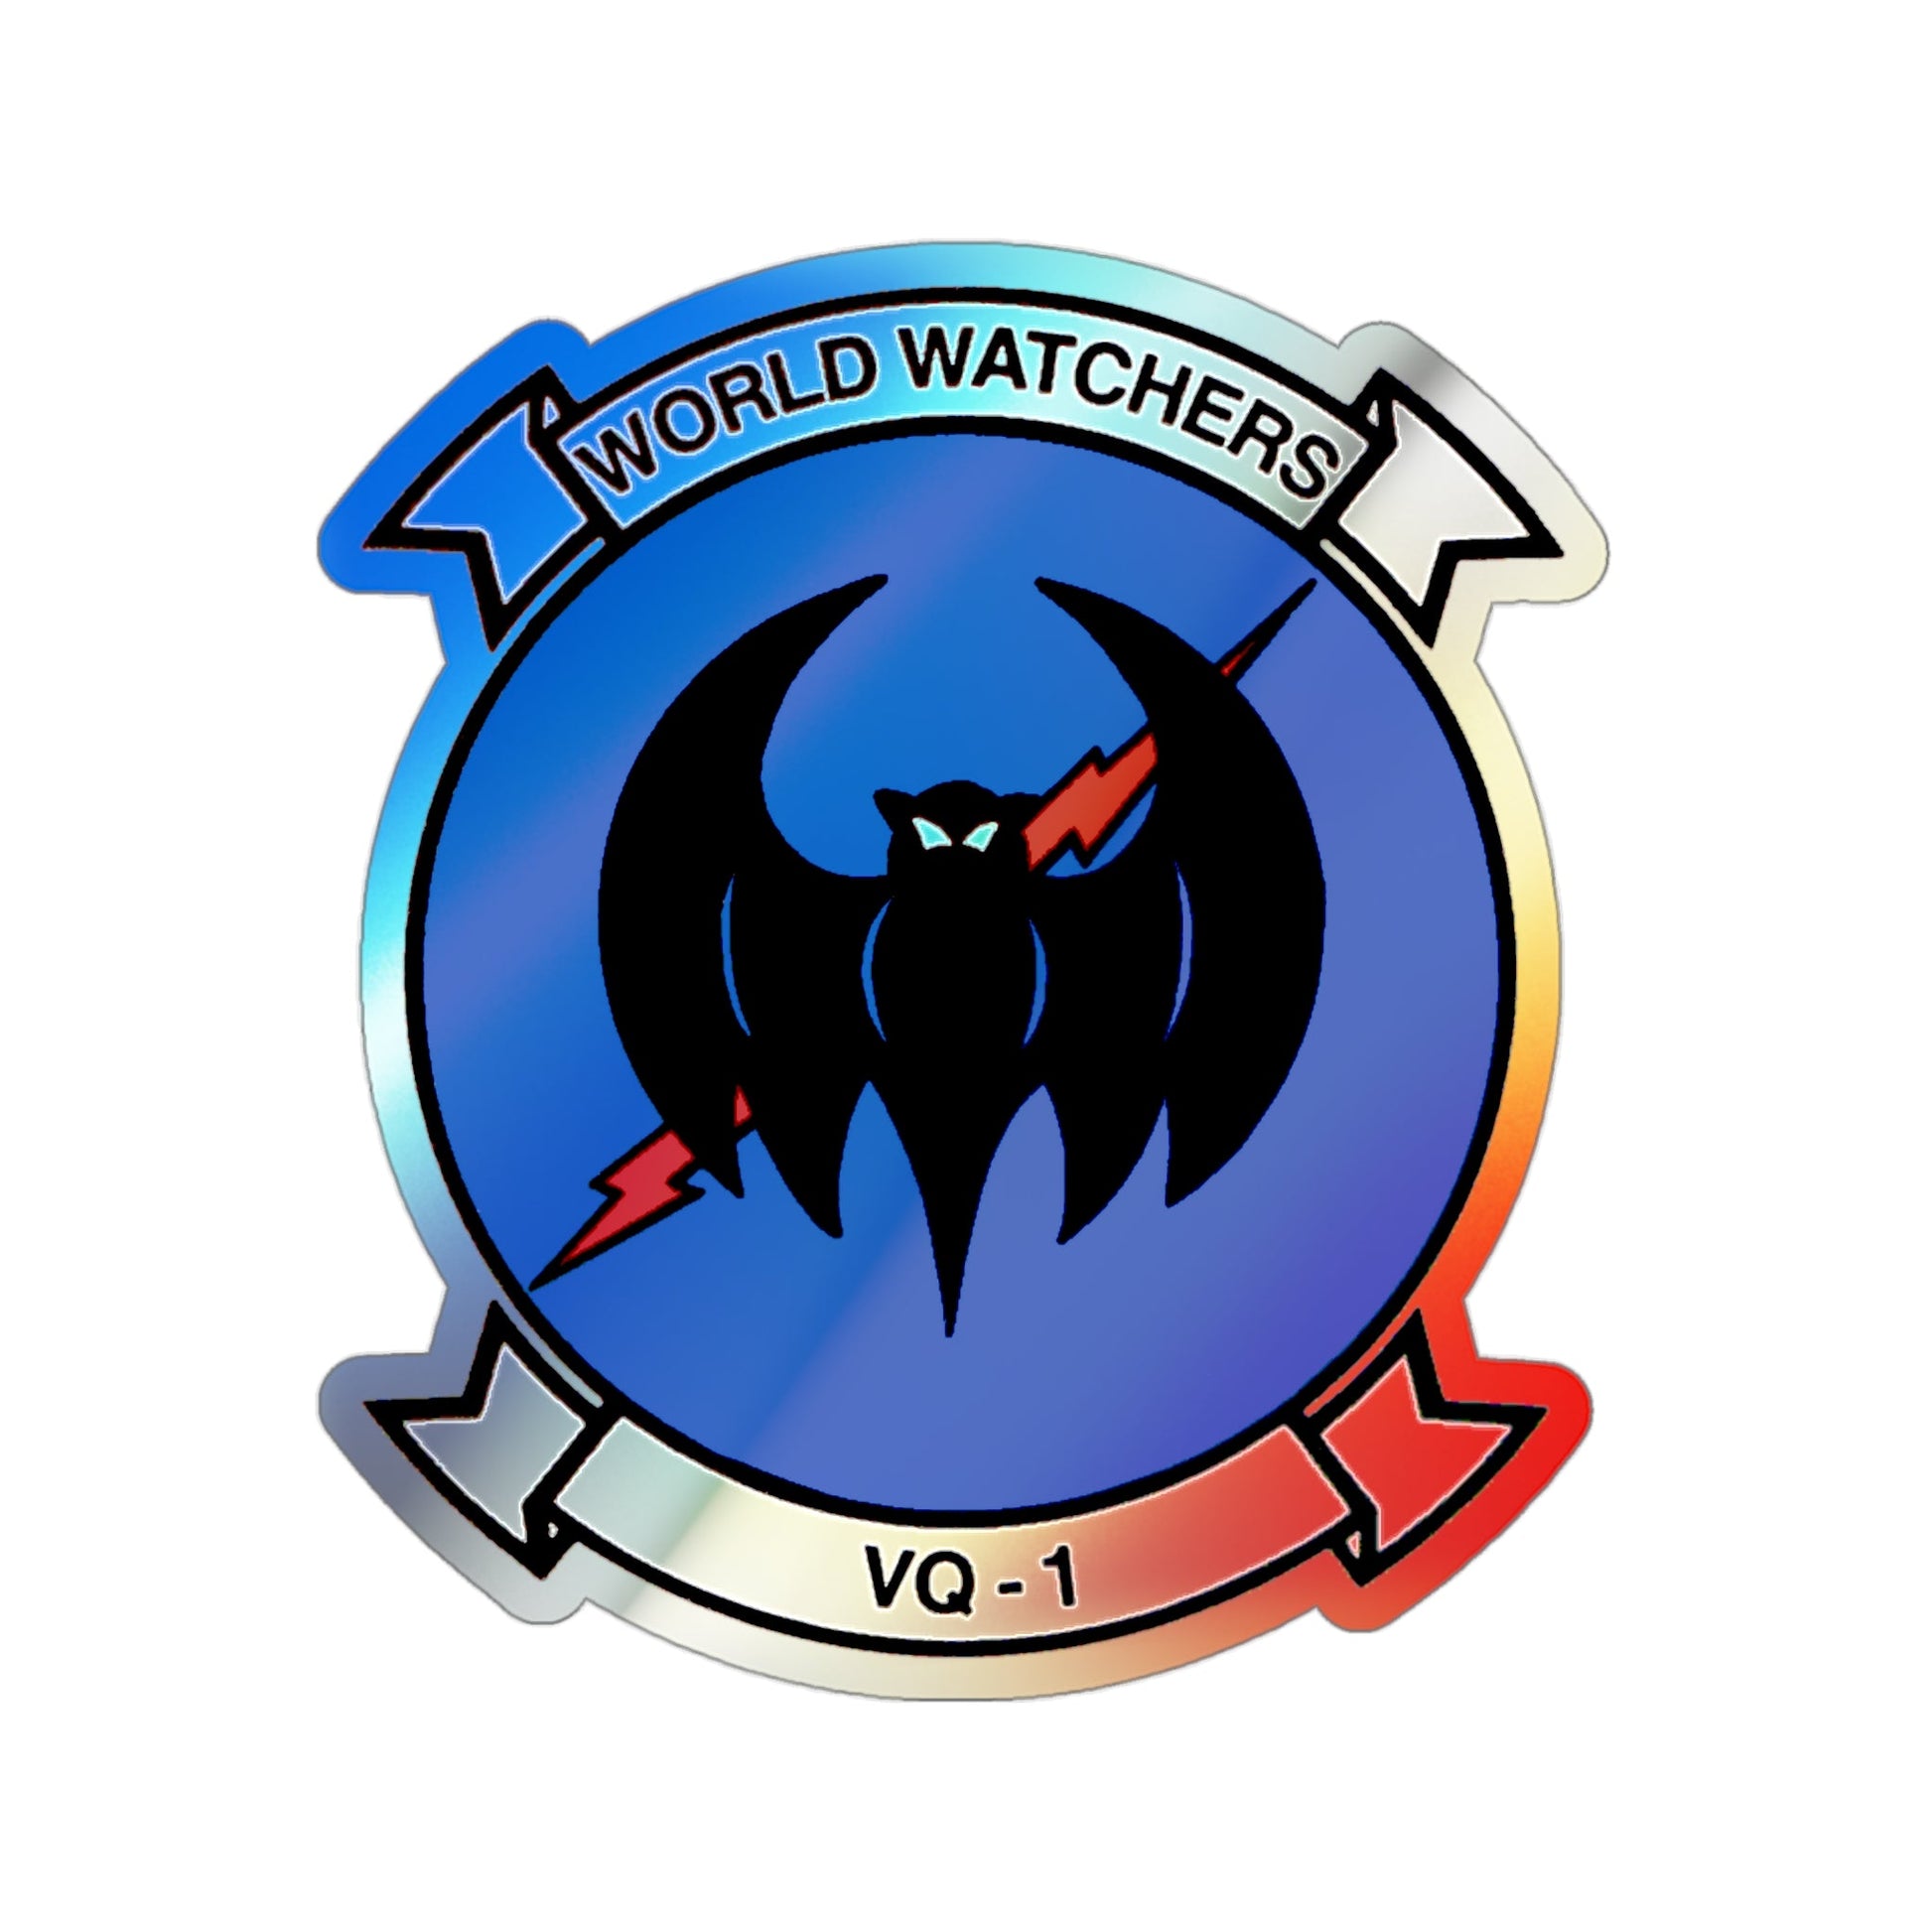 VQ 1 World Watchers v2 (U.S. Navy) Holographic STICKER Die-Cut Vinyl Decal-3 Inch-The Sticker Space